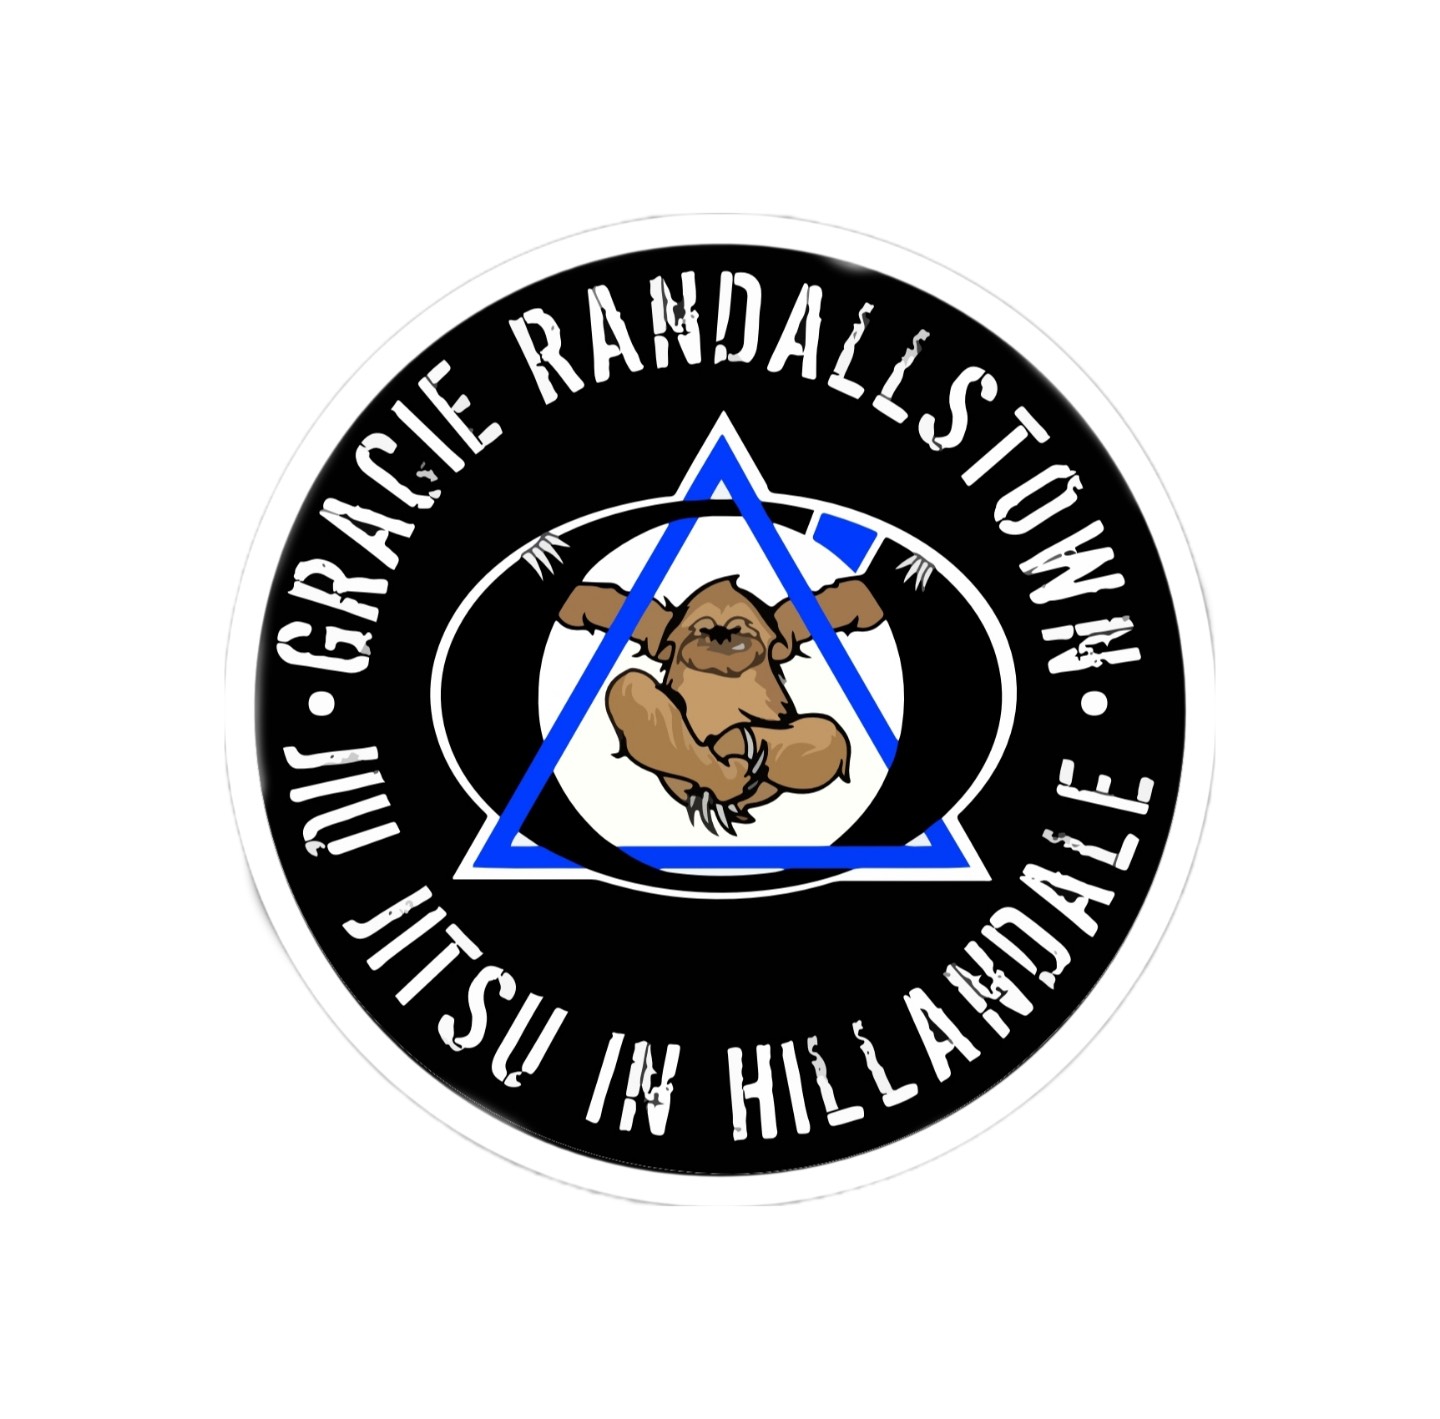 Gracie Randallstown Jiu Jitsu at Hillandale